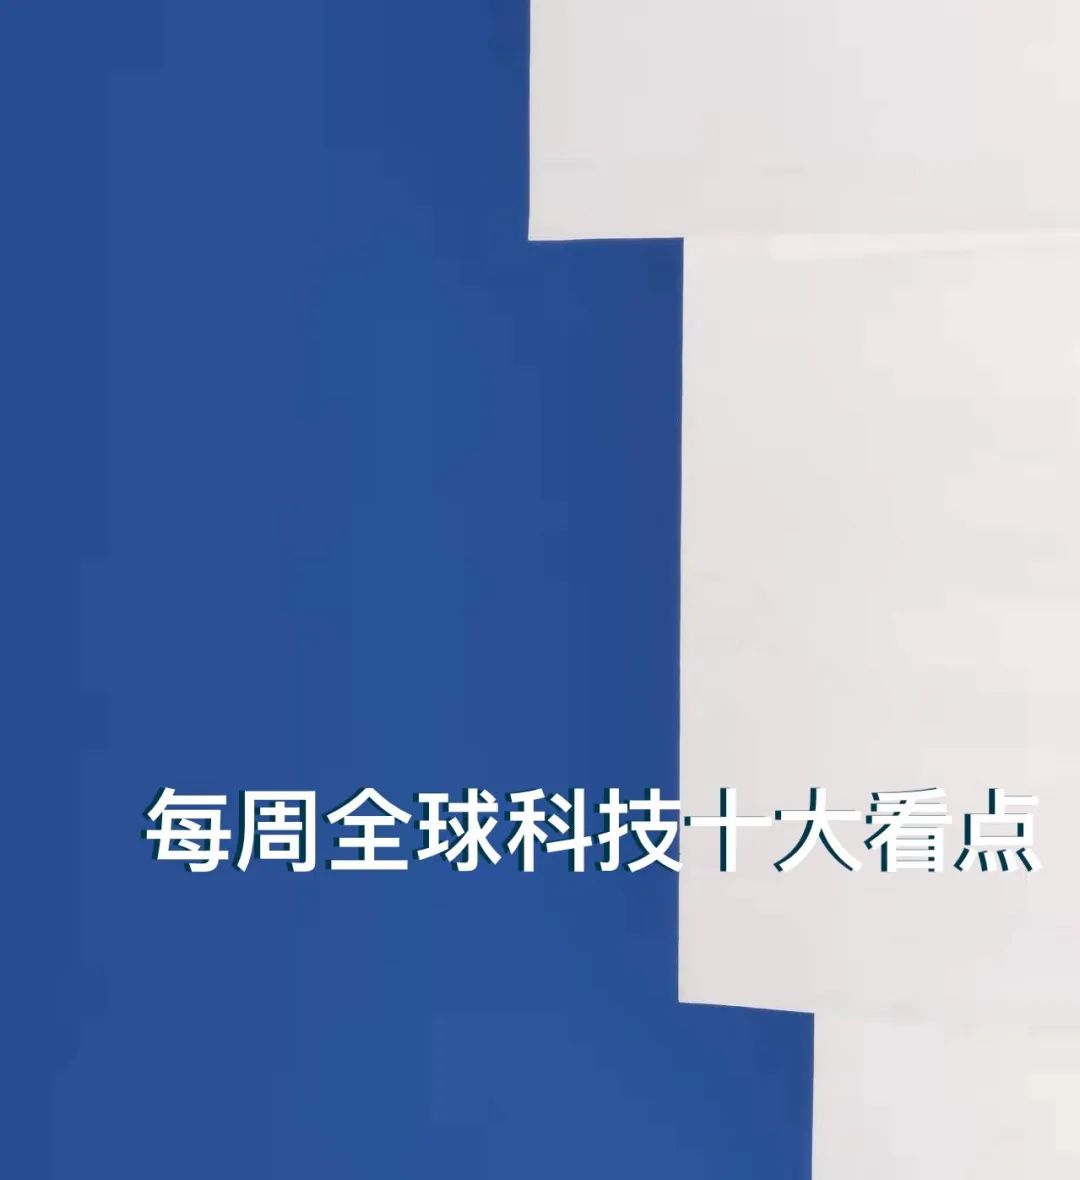 苏州市人大常委会党组副书记王翔一行调研苏州金融科技创新中心